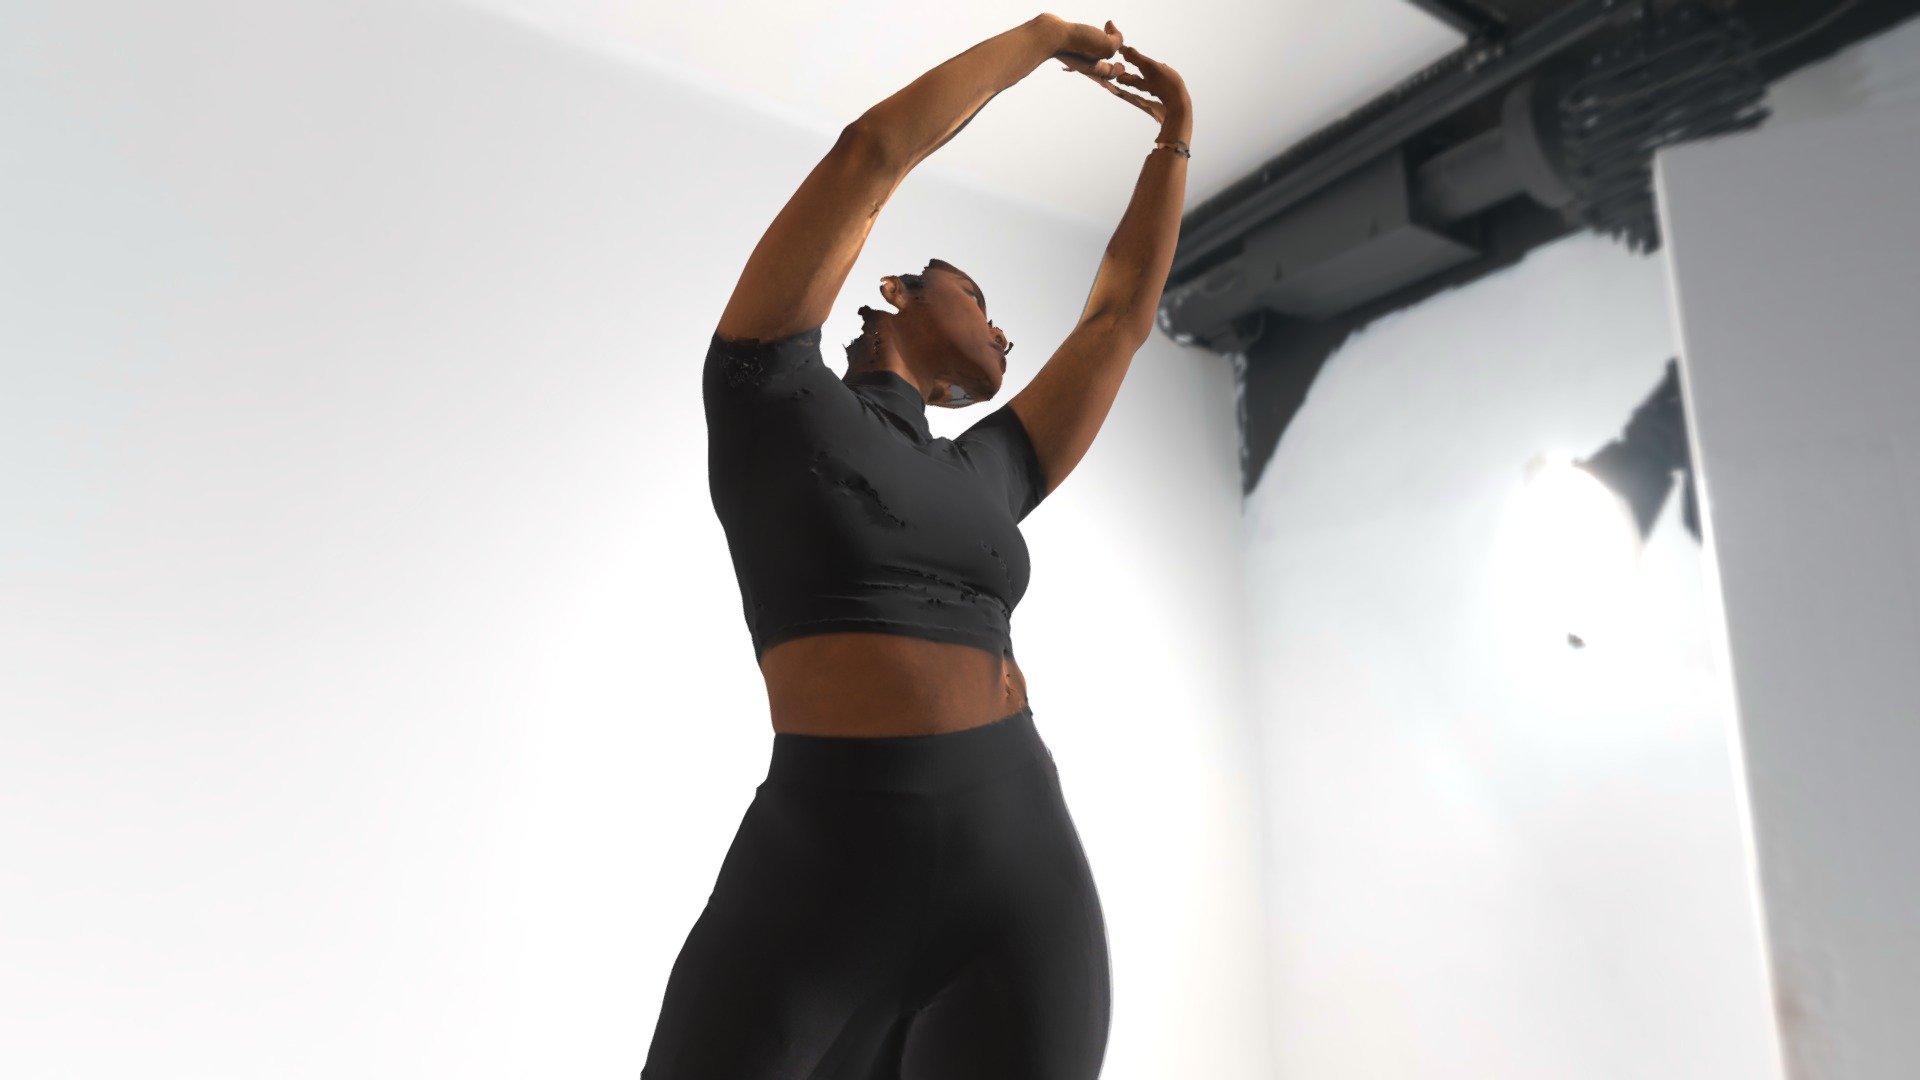 nylee pose - 3D model by Aanti.Complacency [2b3782d] - Sketchfab